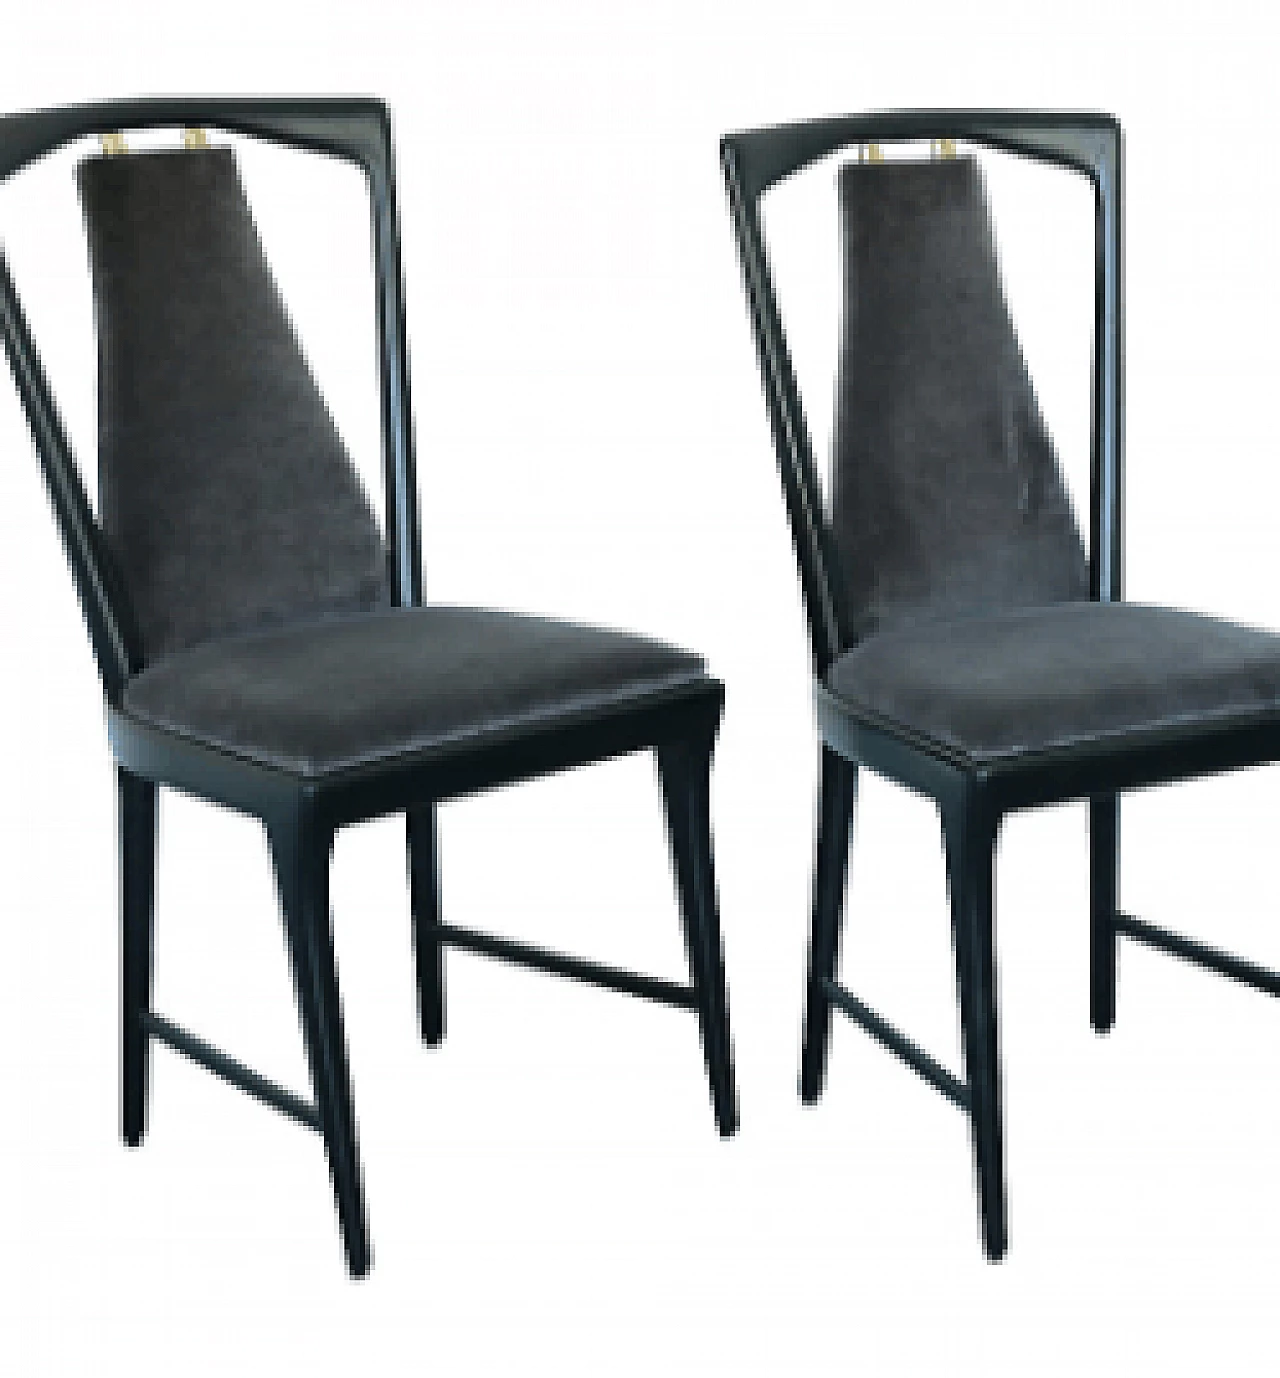 4 Chairs by Osvaldo Borsani for Aterlier Borsani Varedo, 1940s 1131288